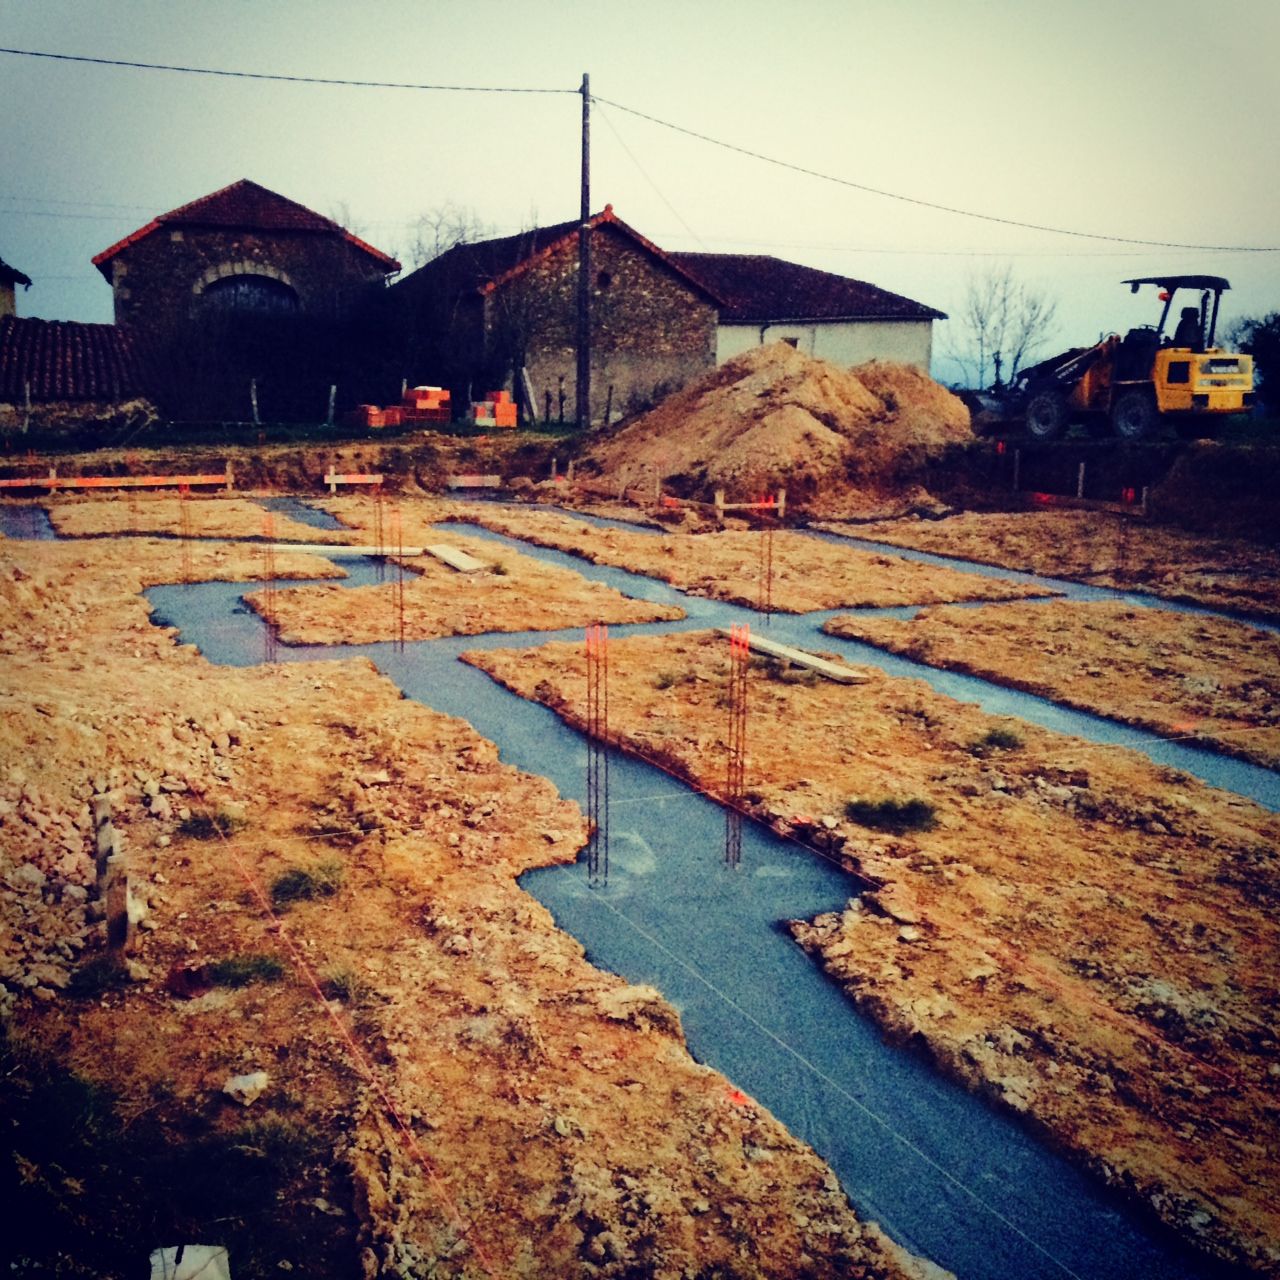 voici nos fondations termines hier le 12/03, nous commenceront l'lvation des murs en bloc  bancher Nopor lundi 17 avec le maon pour la premire range.